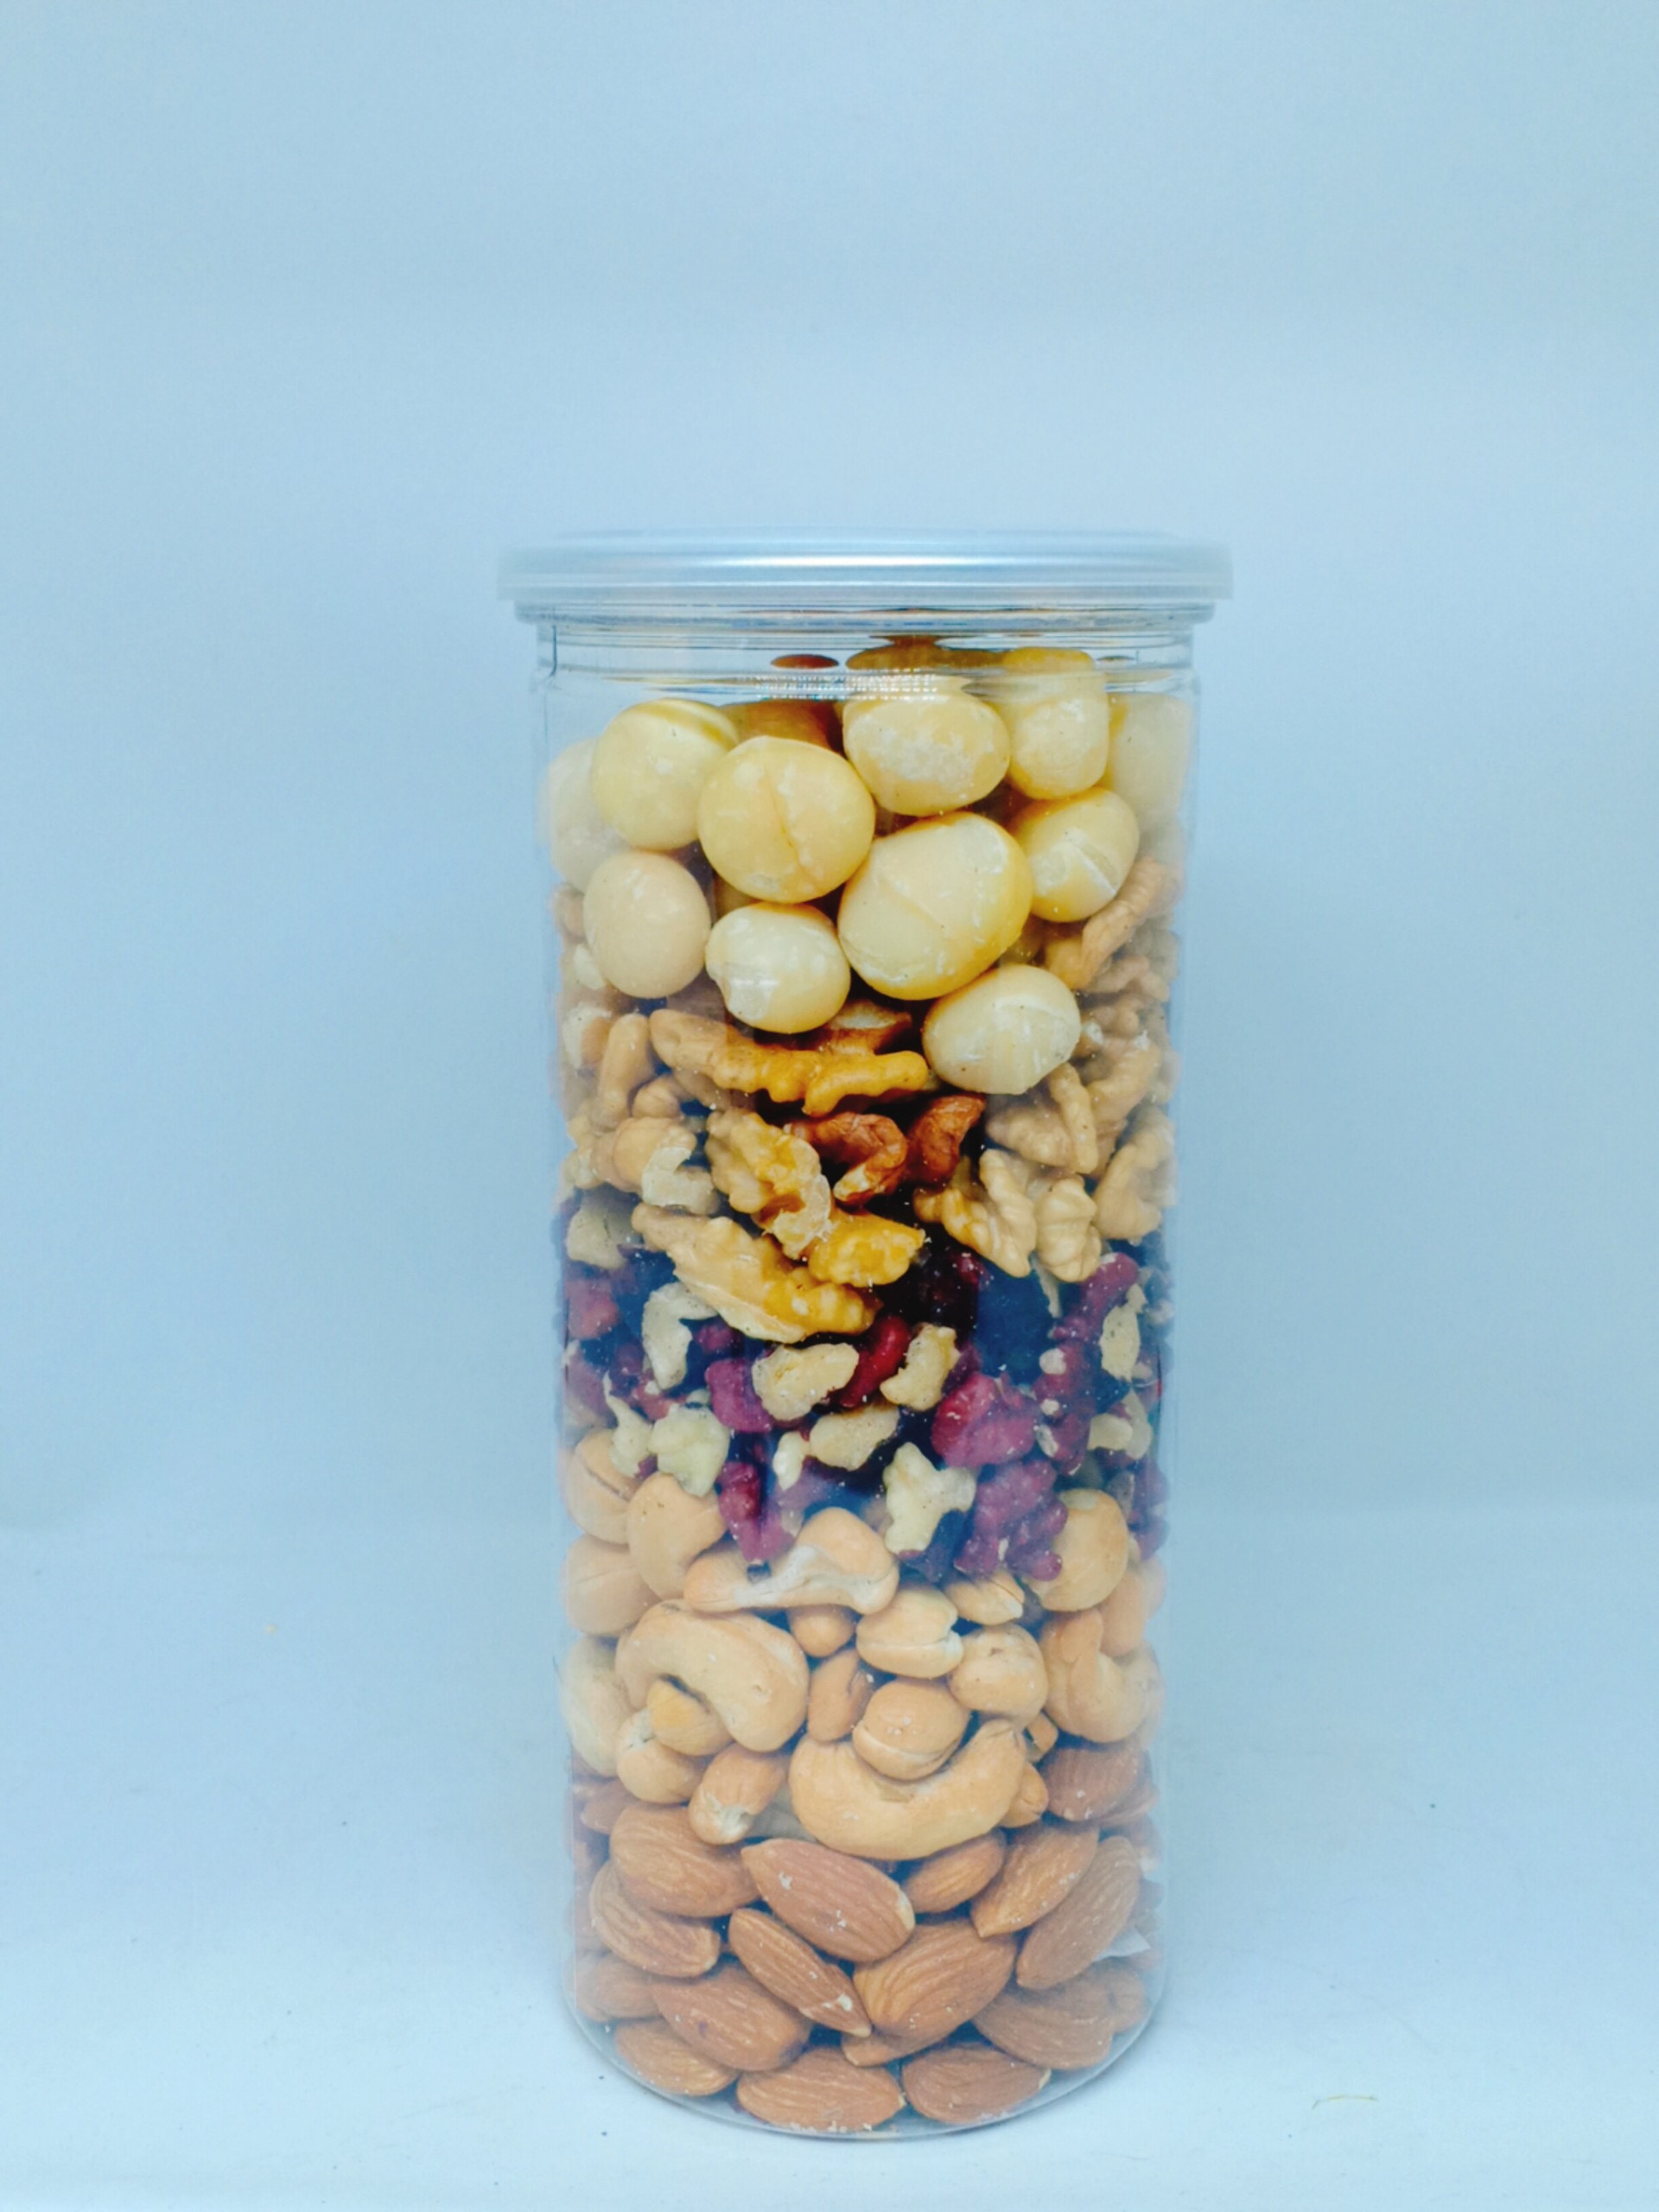 Hỗn hợp Mixed Nuts 5 loại hạt tách vỏ Fonut Hũ 500g ( hạt óc chó đỏ / Vàng, hạnh nhân,mắc ca,điều)